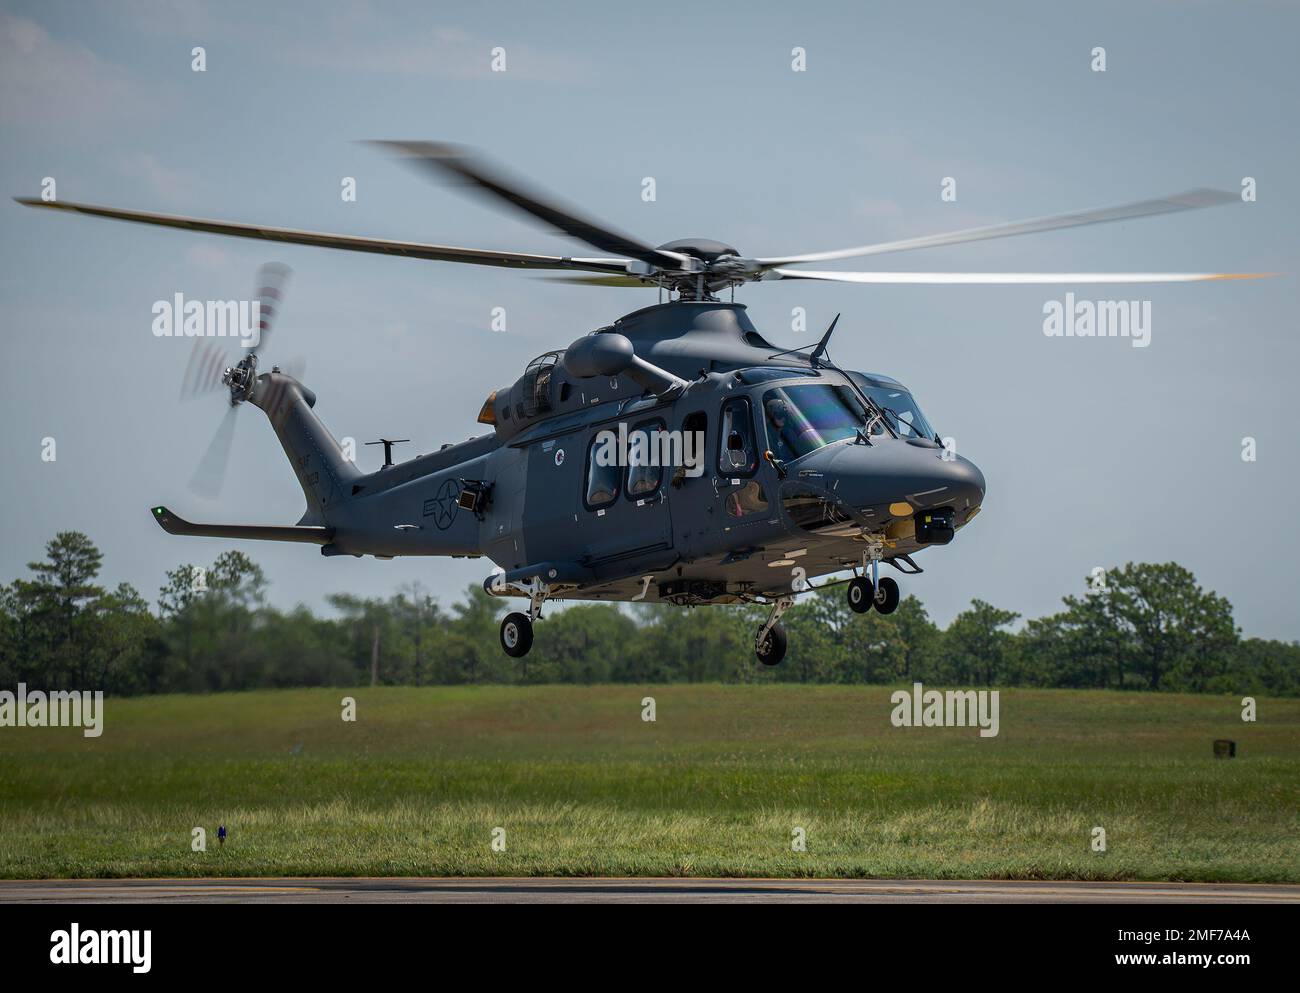 Un lupo grigio MH-139A si solleva per una missione il 17 agosto presso la base dell'aeronautica di Eglin, la fla. Il lupo grigio sortie è stato il primo volo da quando l'aeronautica ha preso la proprietà del velivolo il 12 agosto. Ha anche segnato il primo volo del personale dell'All-Air Force nell'elicottero più recente dell'Air Force. (STATI UNITI Foto dell'aeronautica/Samuel King Jr.) Foto Stock